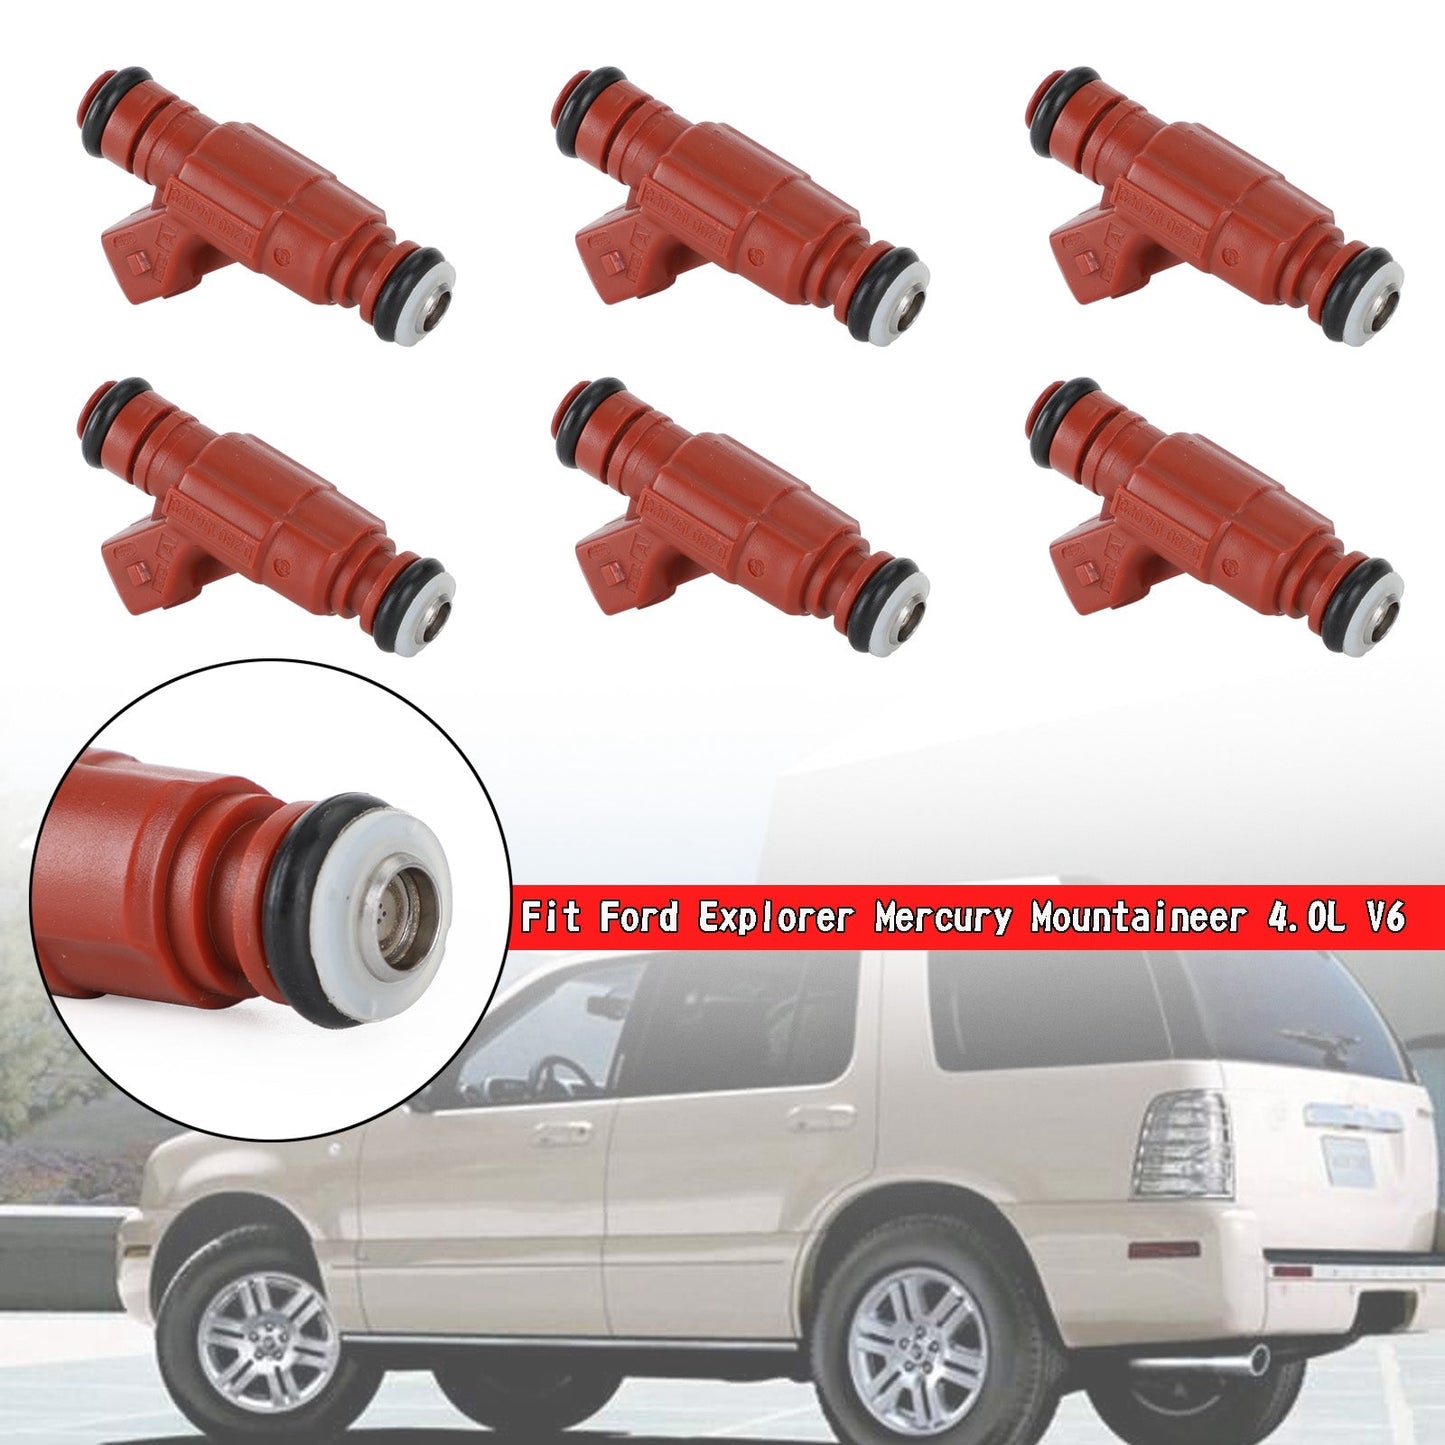 6PCS - Injecteurs de carburant 0280156028 FORD Ford Explorer Mercury Mountaineer 4.0L V6 Générique